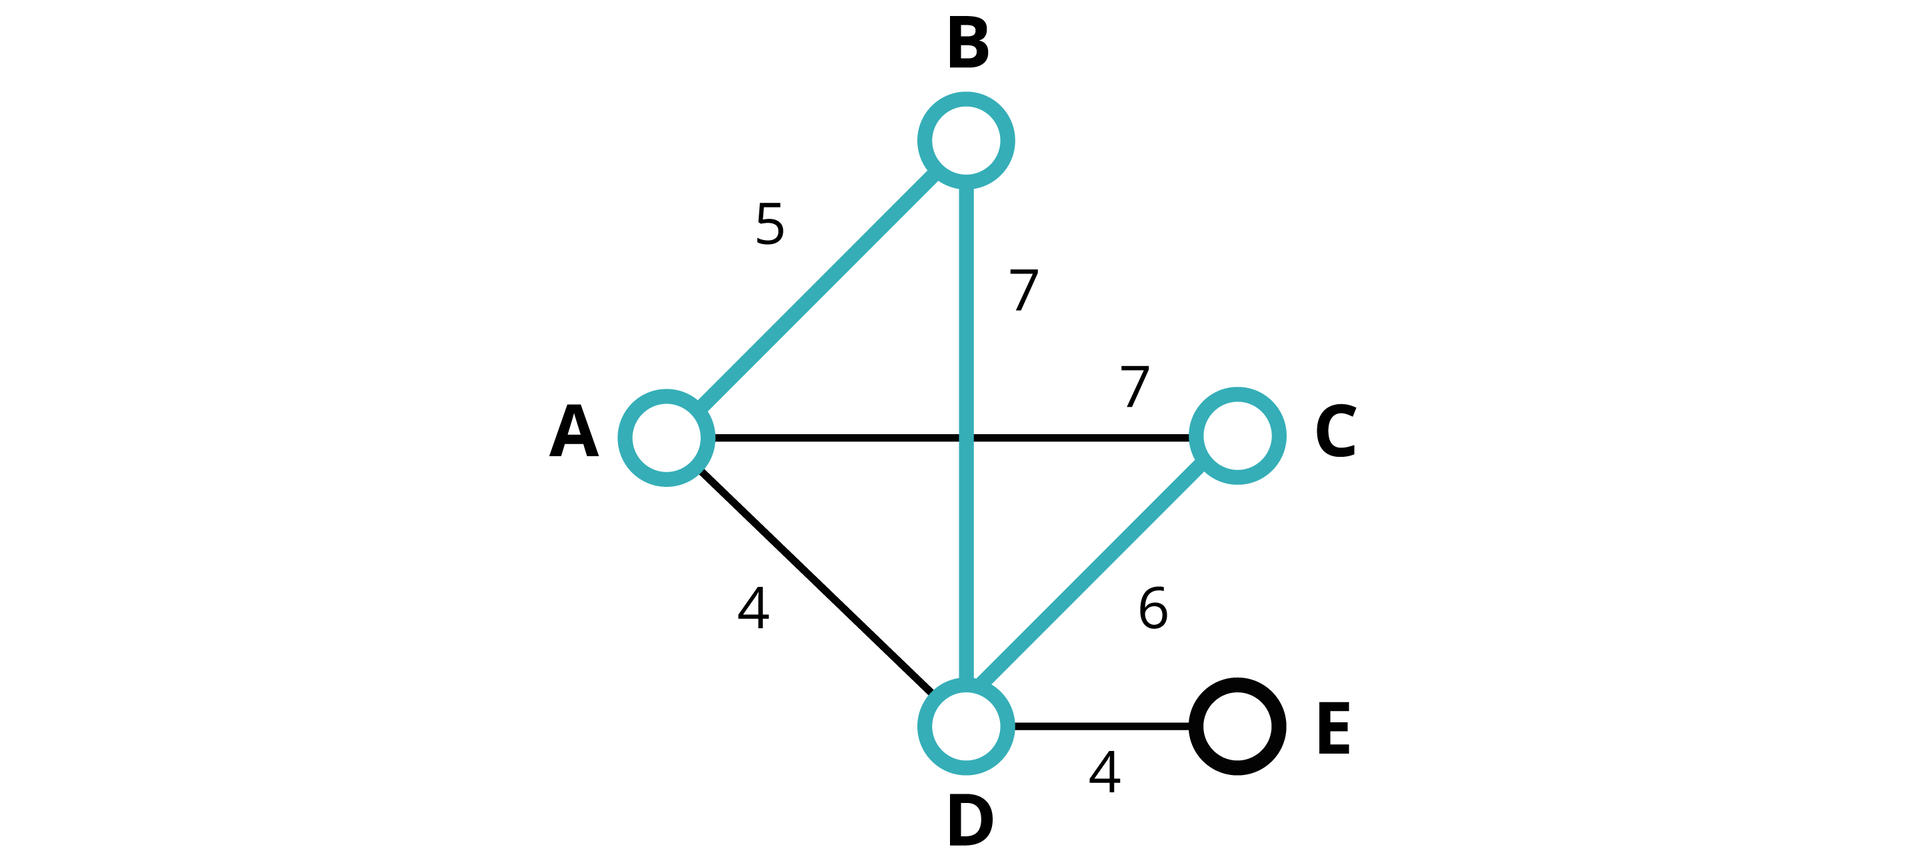 Rysunek przedstawiający problem najdłuższej ścieżki. Rysunek przedstawia graf. Mamy tu połączone ze sobą punkty od A do E. Punkty B, D położone są wzdłuż jednej pionowej linii w wymienionej kolejności, zaczynając od góry. Punkty A, C położone są w jednej poziomej linii znajdującej się w połowie wysokości BD. Punkty A, B, C, D tworzą romb. Punkt E znajduje się pod C i na wysokości D. Opis ścieżek. Punkt A połączony jest z trzema punktami: z punktem B ukośną ścieżką o wadze 5, z punktem C poziomą ścieżką o wadze 7, z punktem D ukośną ścieżką o wadze 4. Punkt B połączony jest z dwoma punktami: z punktem A ukośną ścieżką o wadze 5 oraz z punktem D pionową ścieżką o wadze 7. Punkt C połączony jest z dwoma punktami: z punktem A poziomą ścieżką o wadze 7 oraz z punktem D ukośną ścieżką o wadze 6. Punkt D połączony jest z czterema punktami: z punktem A ukośną ścieżką o wadze 4, z punktem B pionową ścieżką o wadze 7, z punktem C ukośną ścieżką o wadze 6 oraz z punktem E poziomą ścieżką o wadze 4. Punkt E ma tylko jedno połączenie - z punktem D poziomą ścieżką o wadze 4. Kolorem wyróżniono ścieżkę ABDC w kształcie litery Z obróconej o 45 stopni w lewo. Ścieżka ta jest następująca: ukośna ścieżka AB o wadze 5, pionowa ścieżka BD o wadze 7, ukośna ścieżka DC o wadze 6.